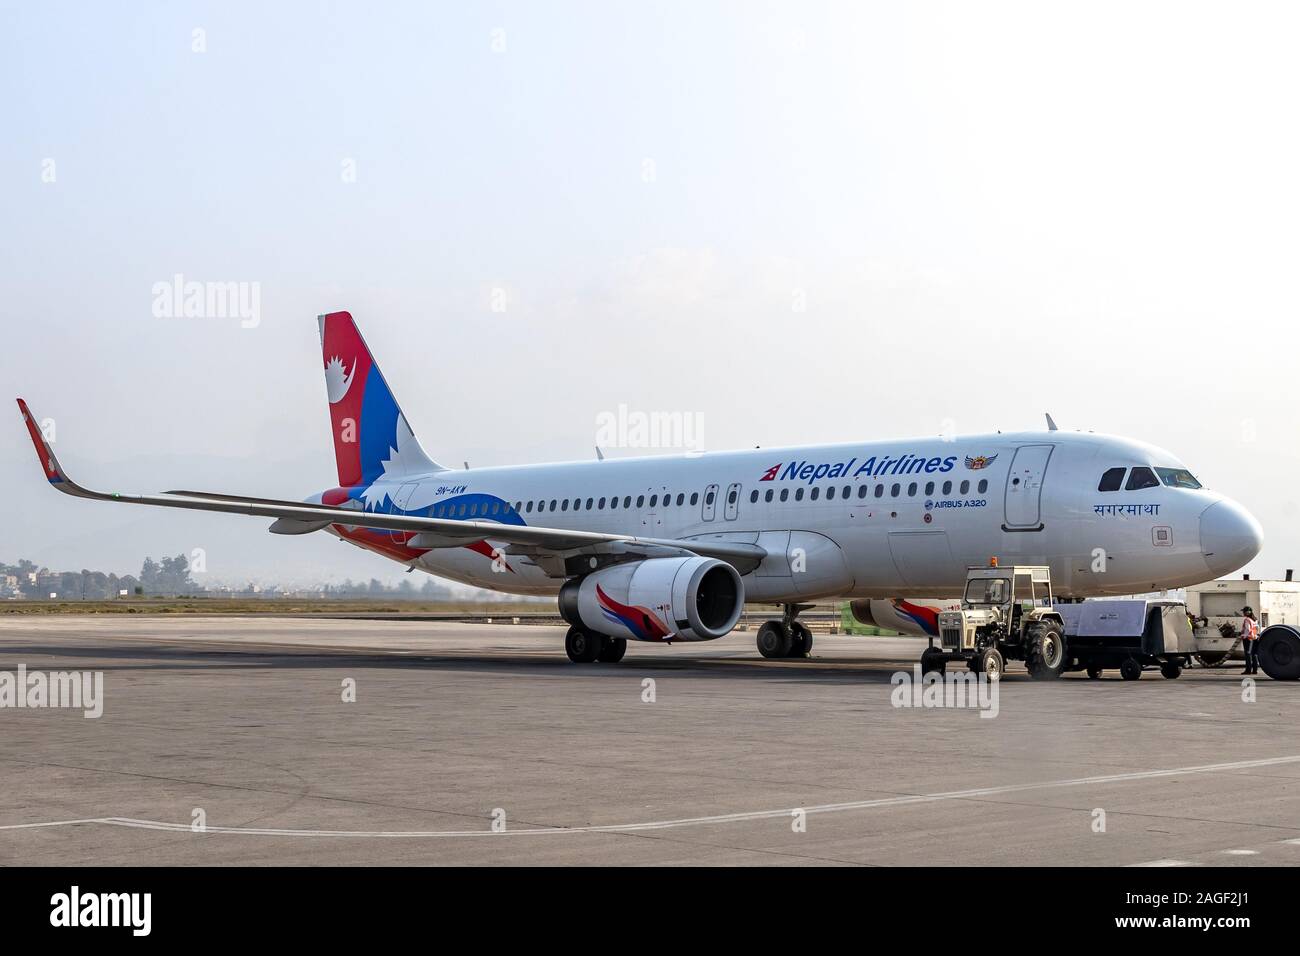 Katmandou, Népal - 22 novembre 2019 : Nepal Airlines Airbus A320 en attente d'autorisation sur la voie de circulation à Tribuvan International Airport à Katmandou, Népal Banque D'Images